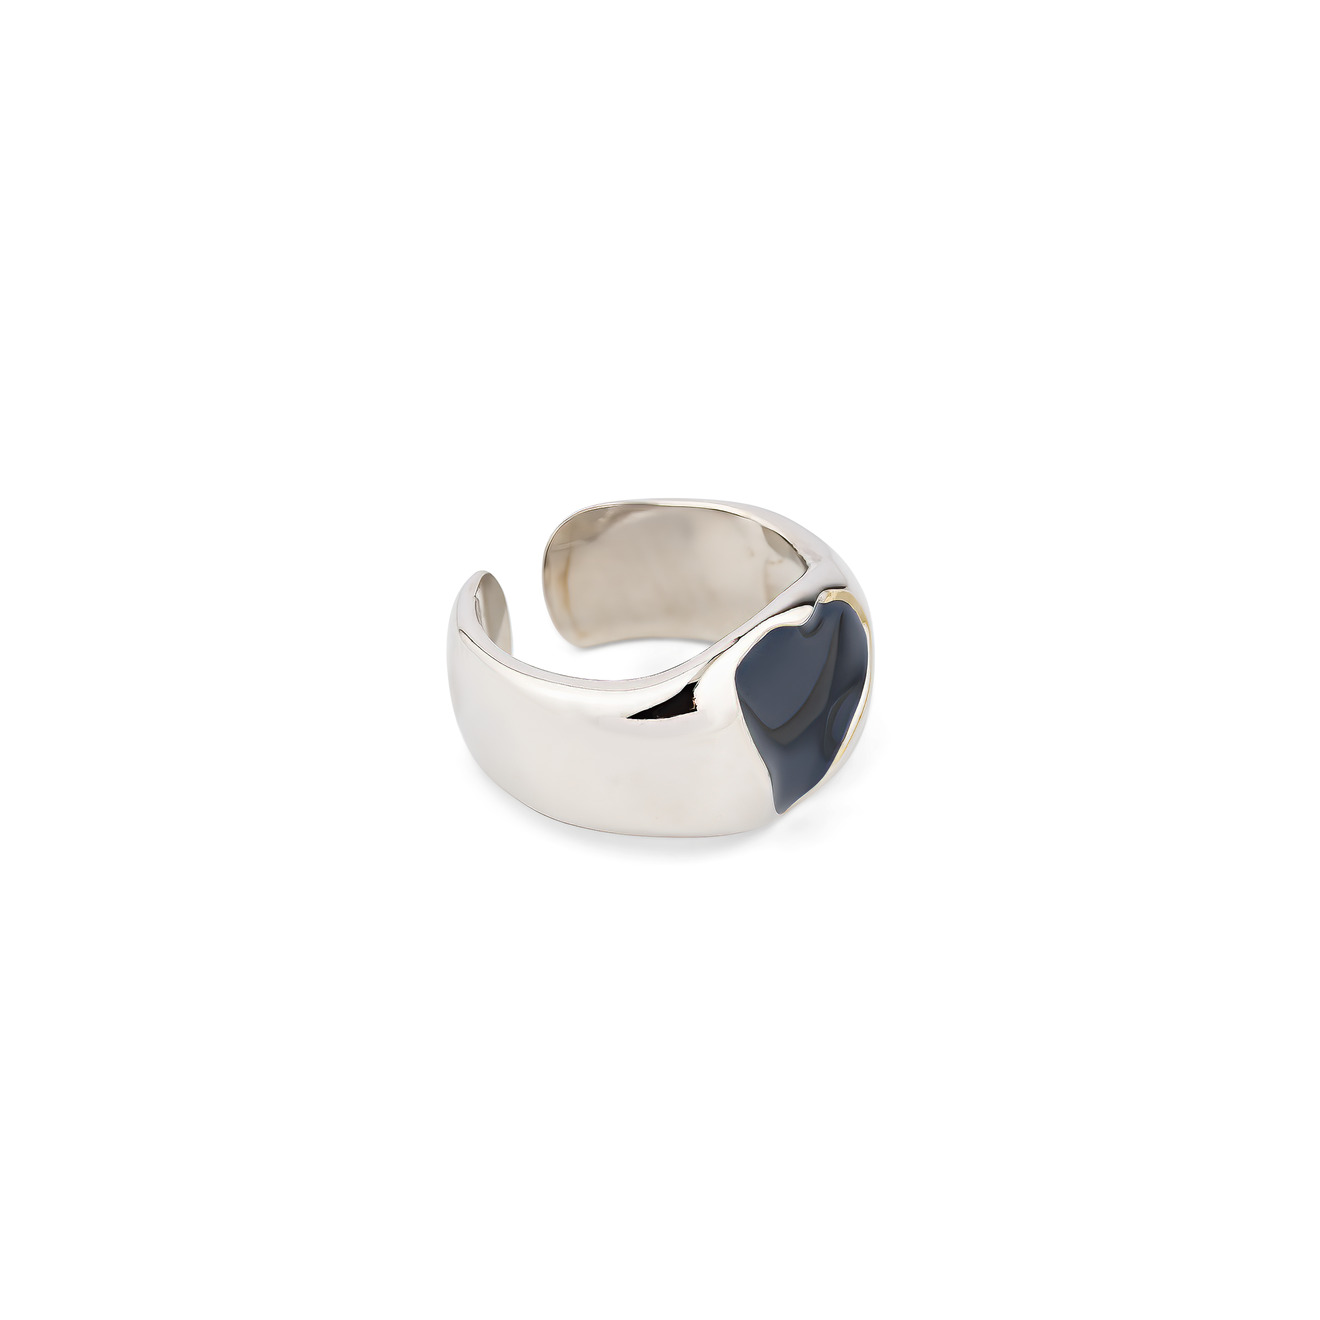 Free Form Jewelry Кольцо серебристое с черным сердечком aqua бисерное кольцо с черным смайлом